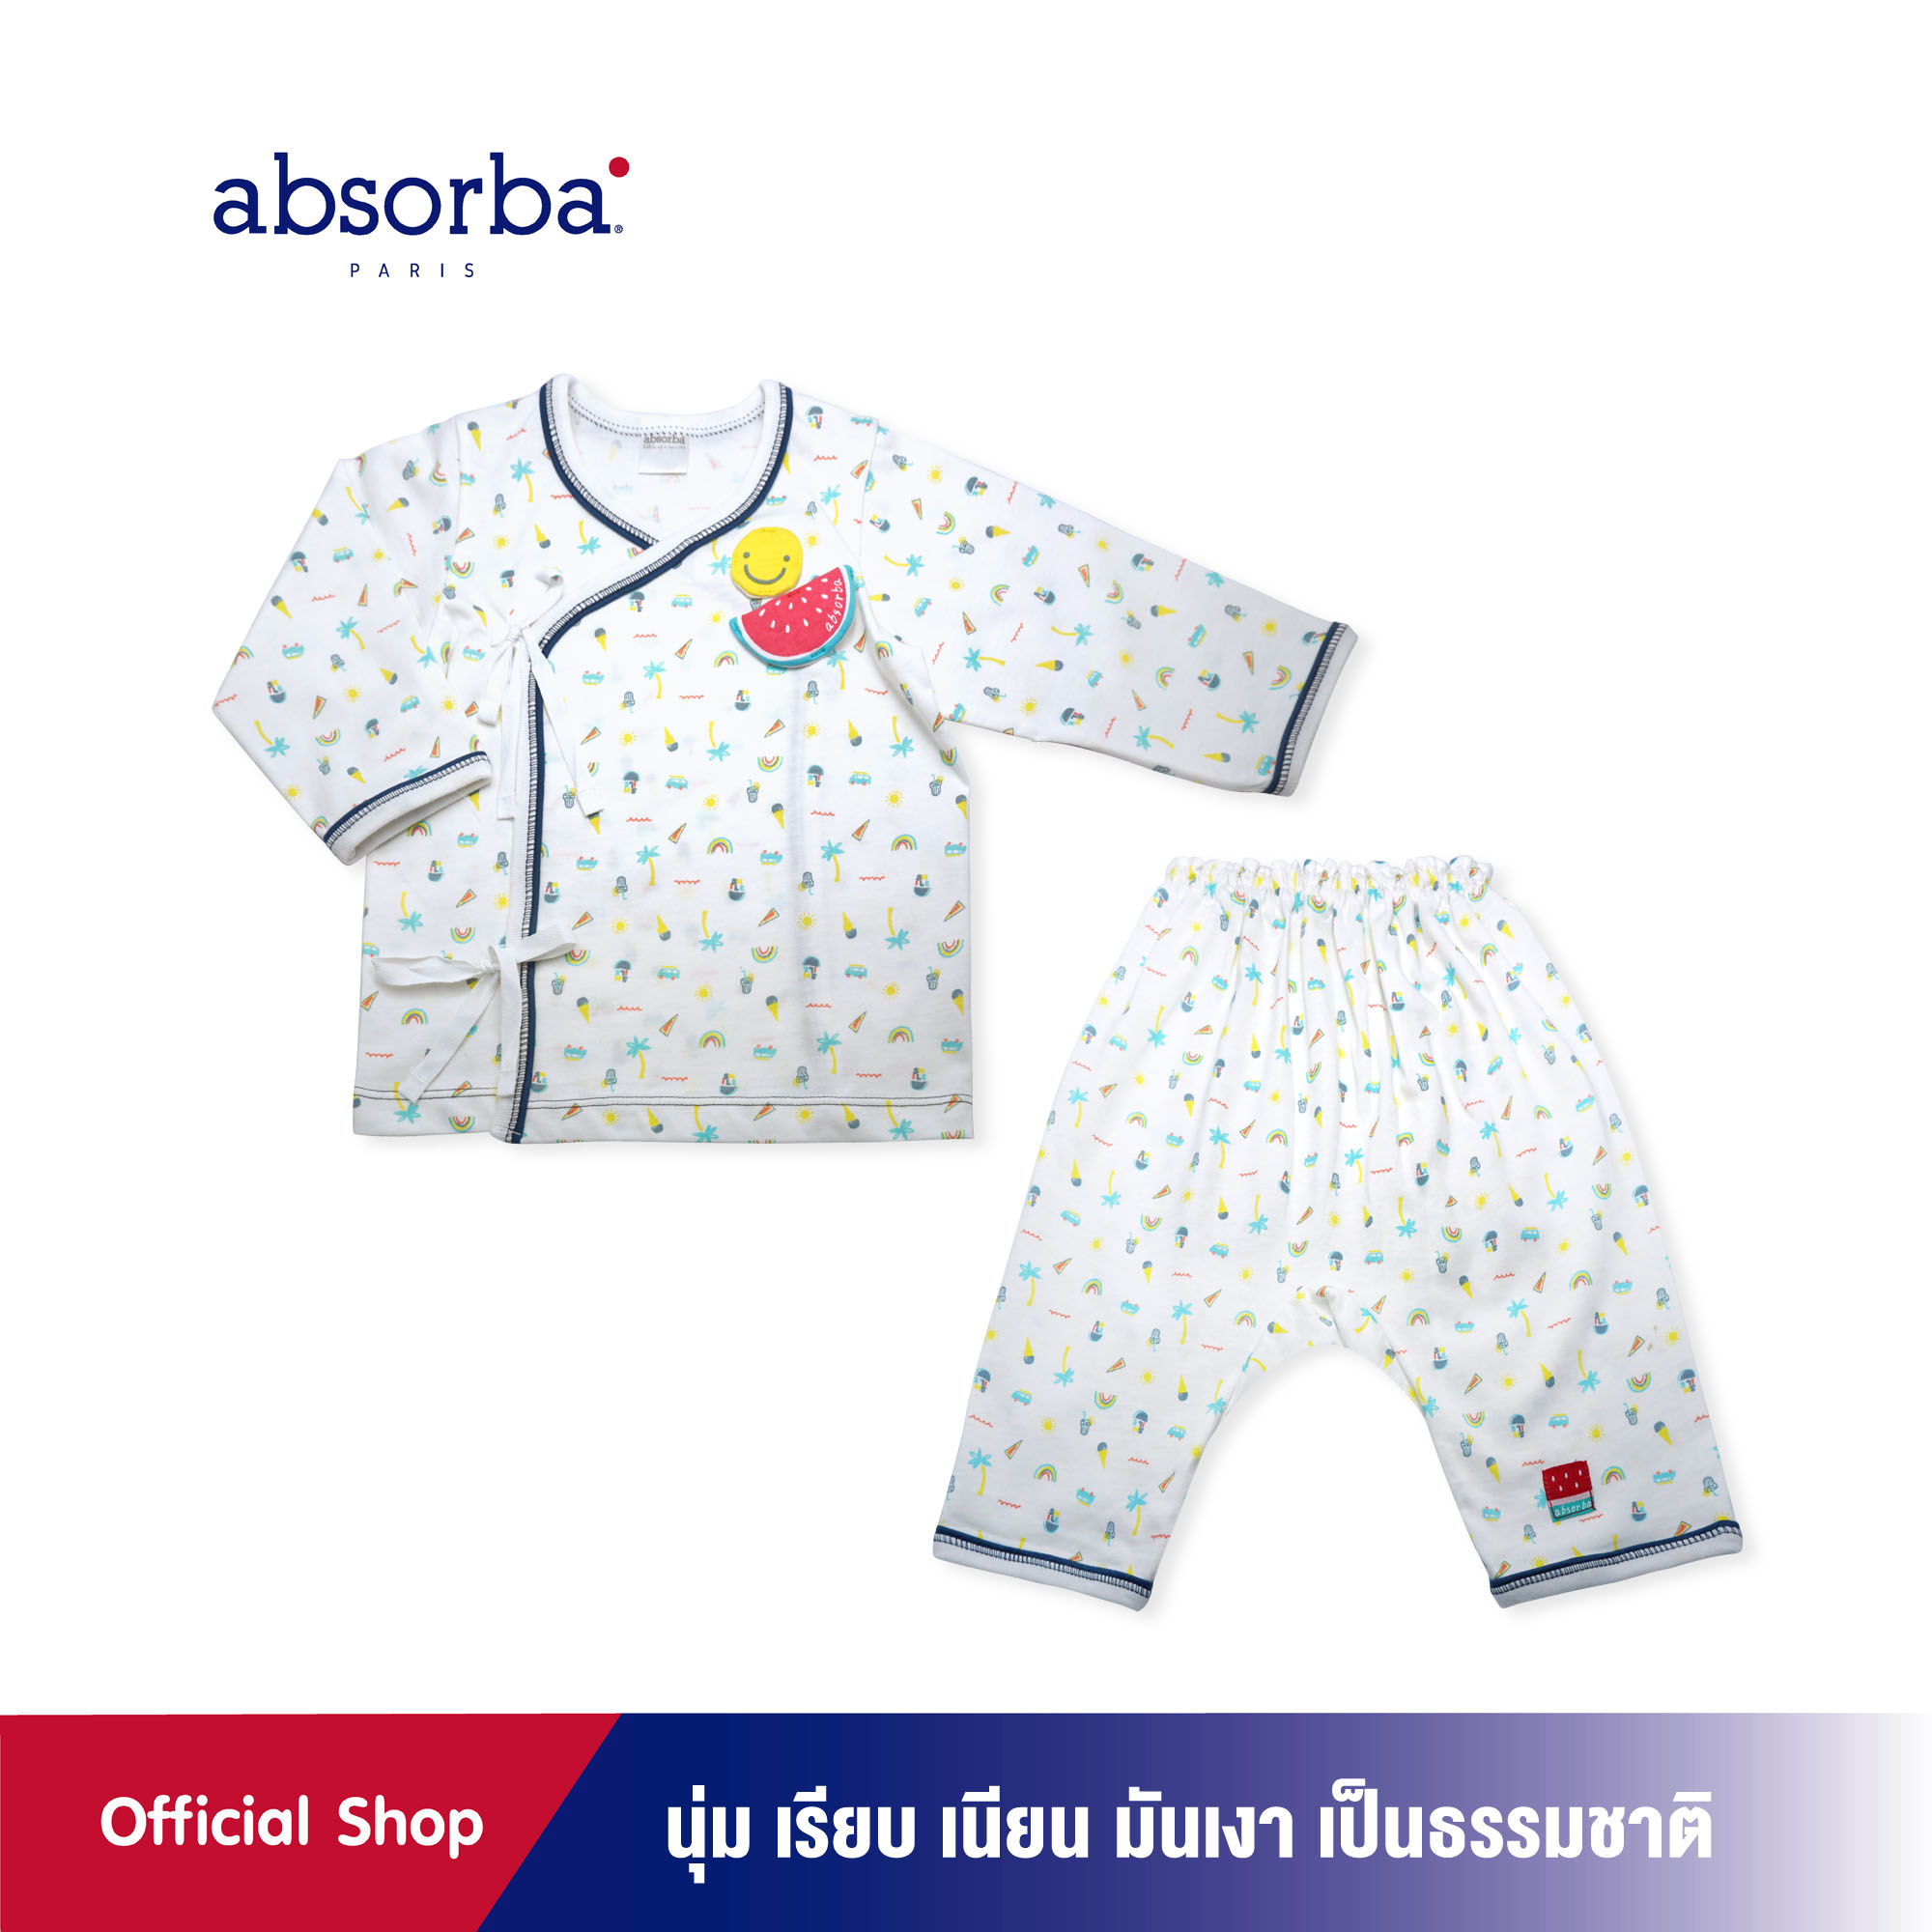 ซื้อที่ไหน absorba (แอ๊บซอร์บา) ชุดเสื้อป้ายเด็กอ่อน หรือ ชุดเสื้อผูกหน้าเด็กอ่อน แขนยาว คอลเลคชั่น Ice Cream สำหรับเด็กแรกเกิดถึง 12 เดือน - R1C5002TU ชุดเด็กผู้ชาย